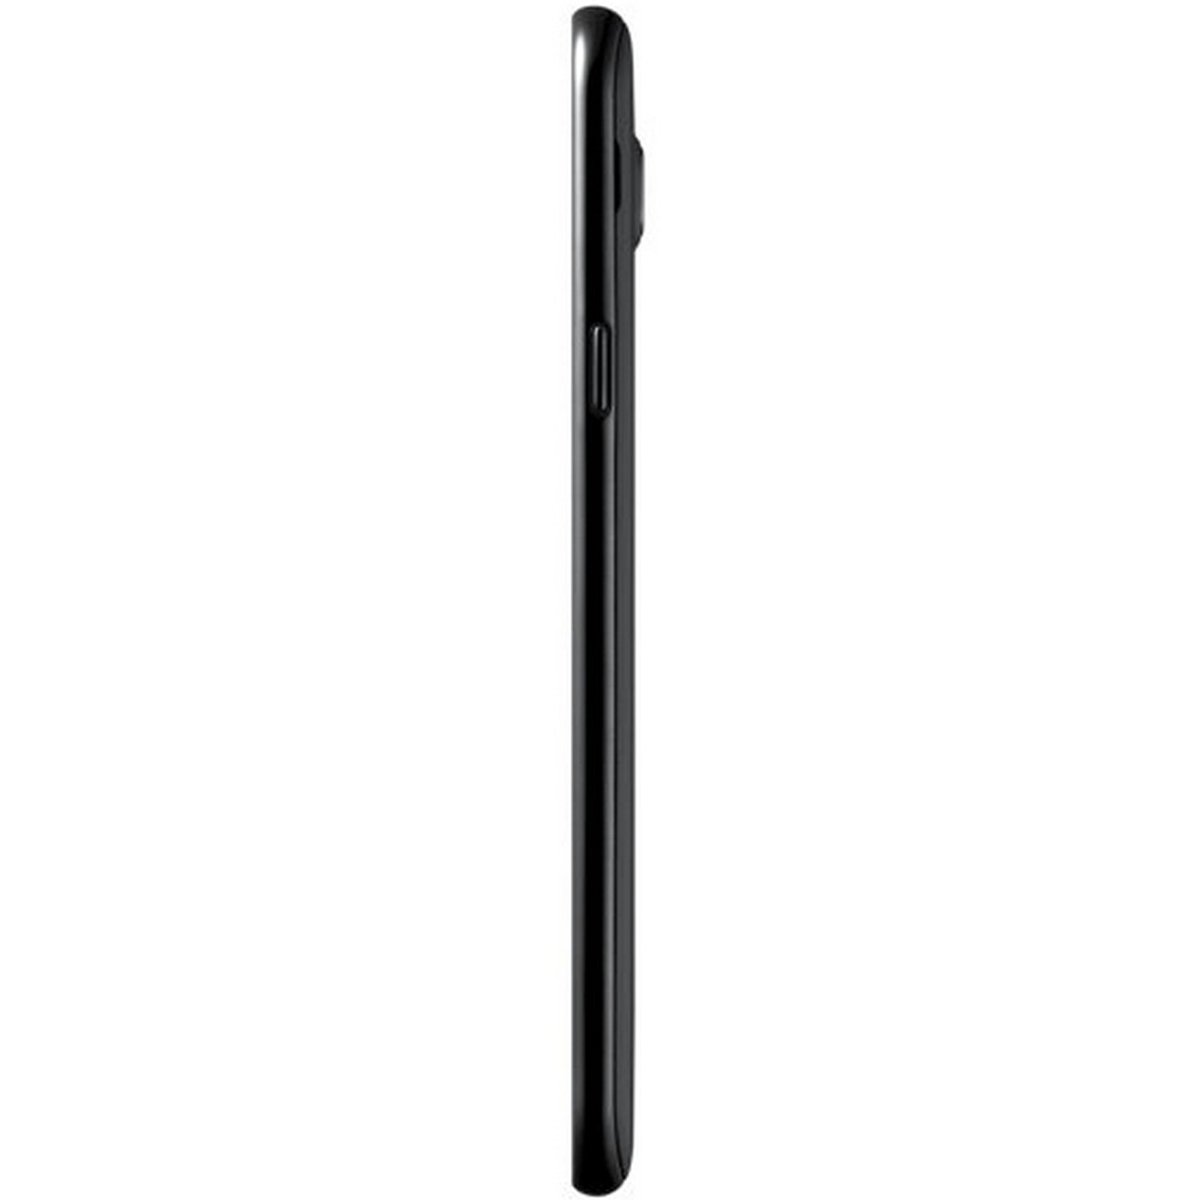 Samsung Galaxy J7 Nxt SM-J701FZ Black